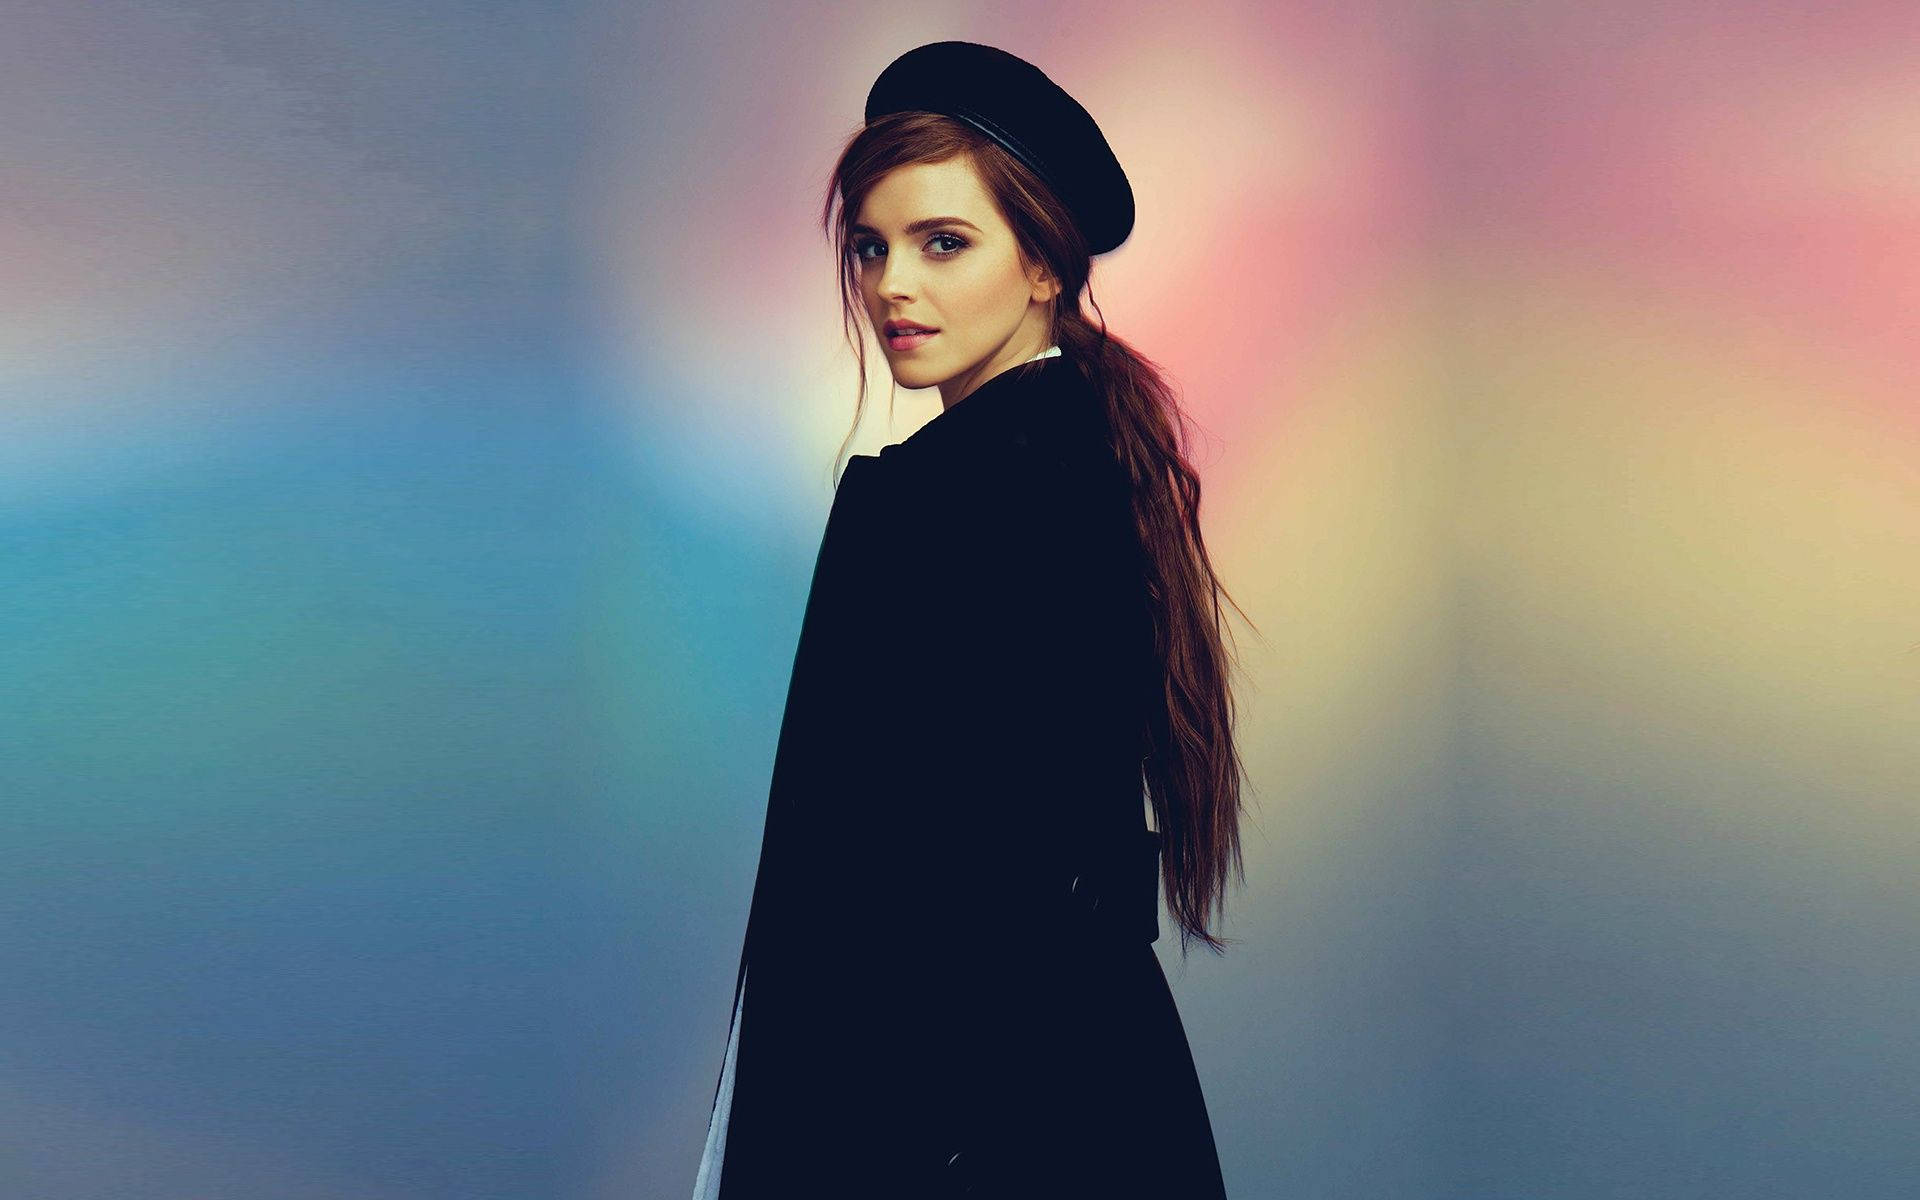 Emma Watson posing in a black beret. Wallpaper